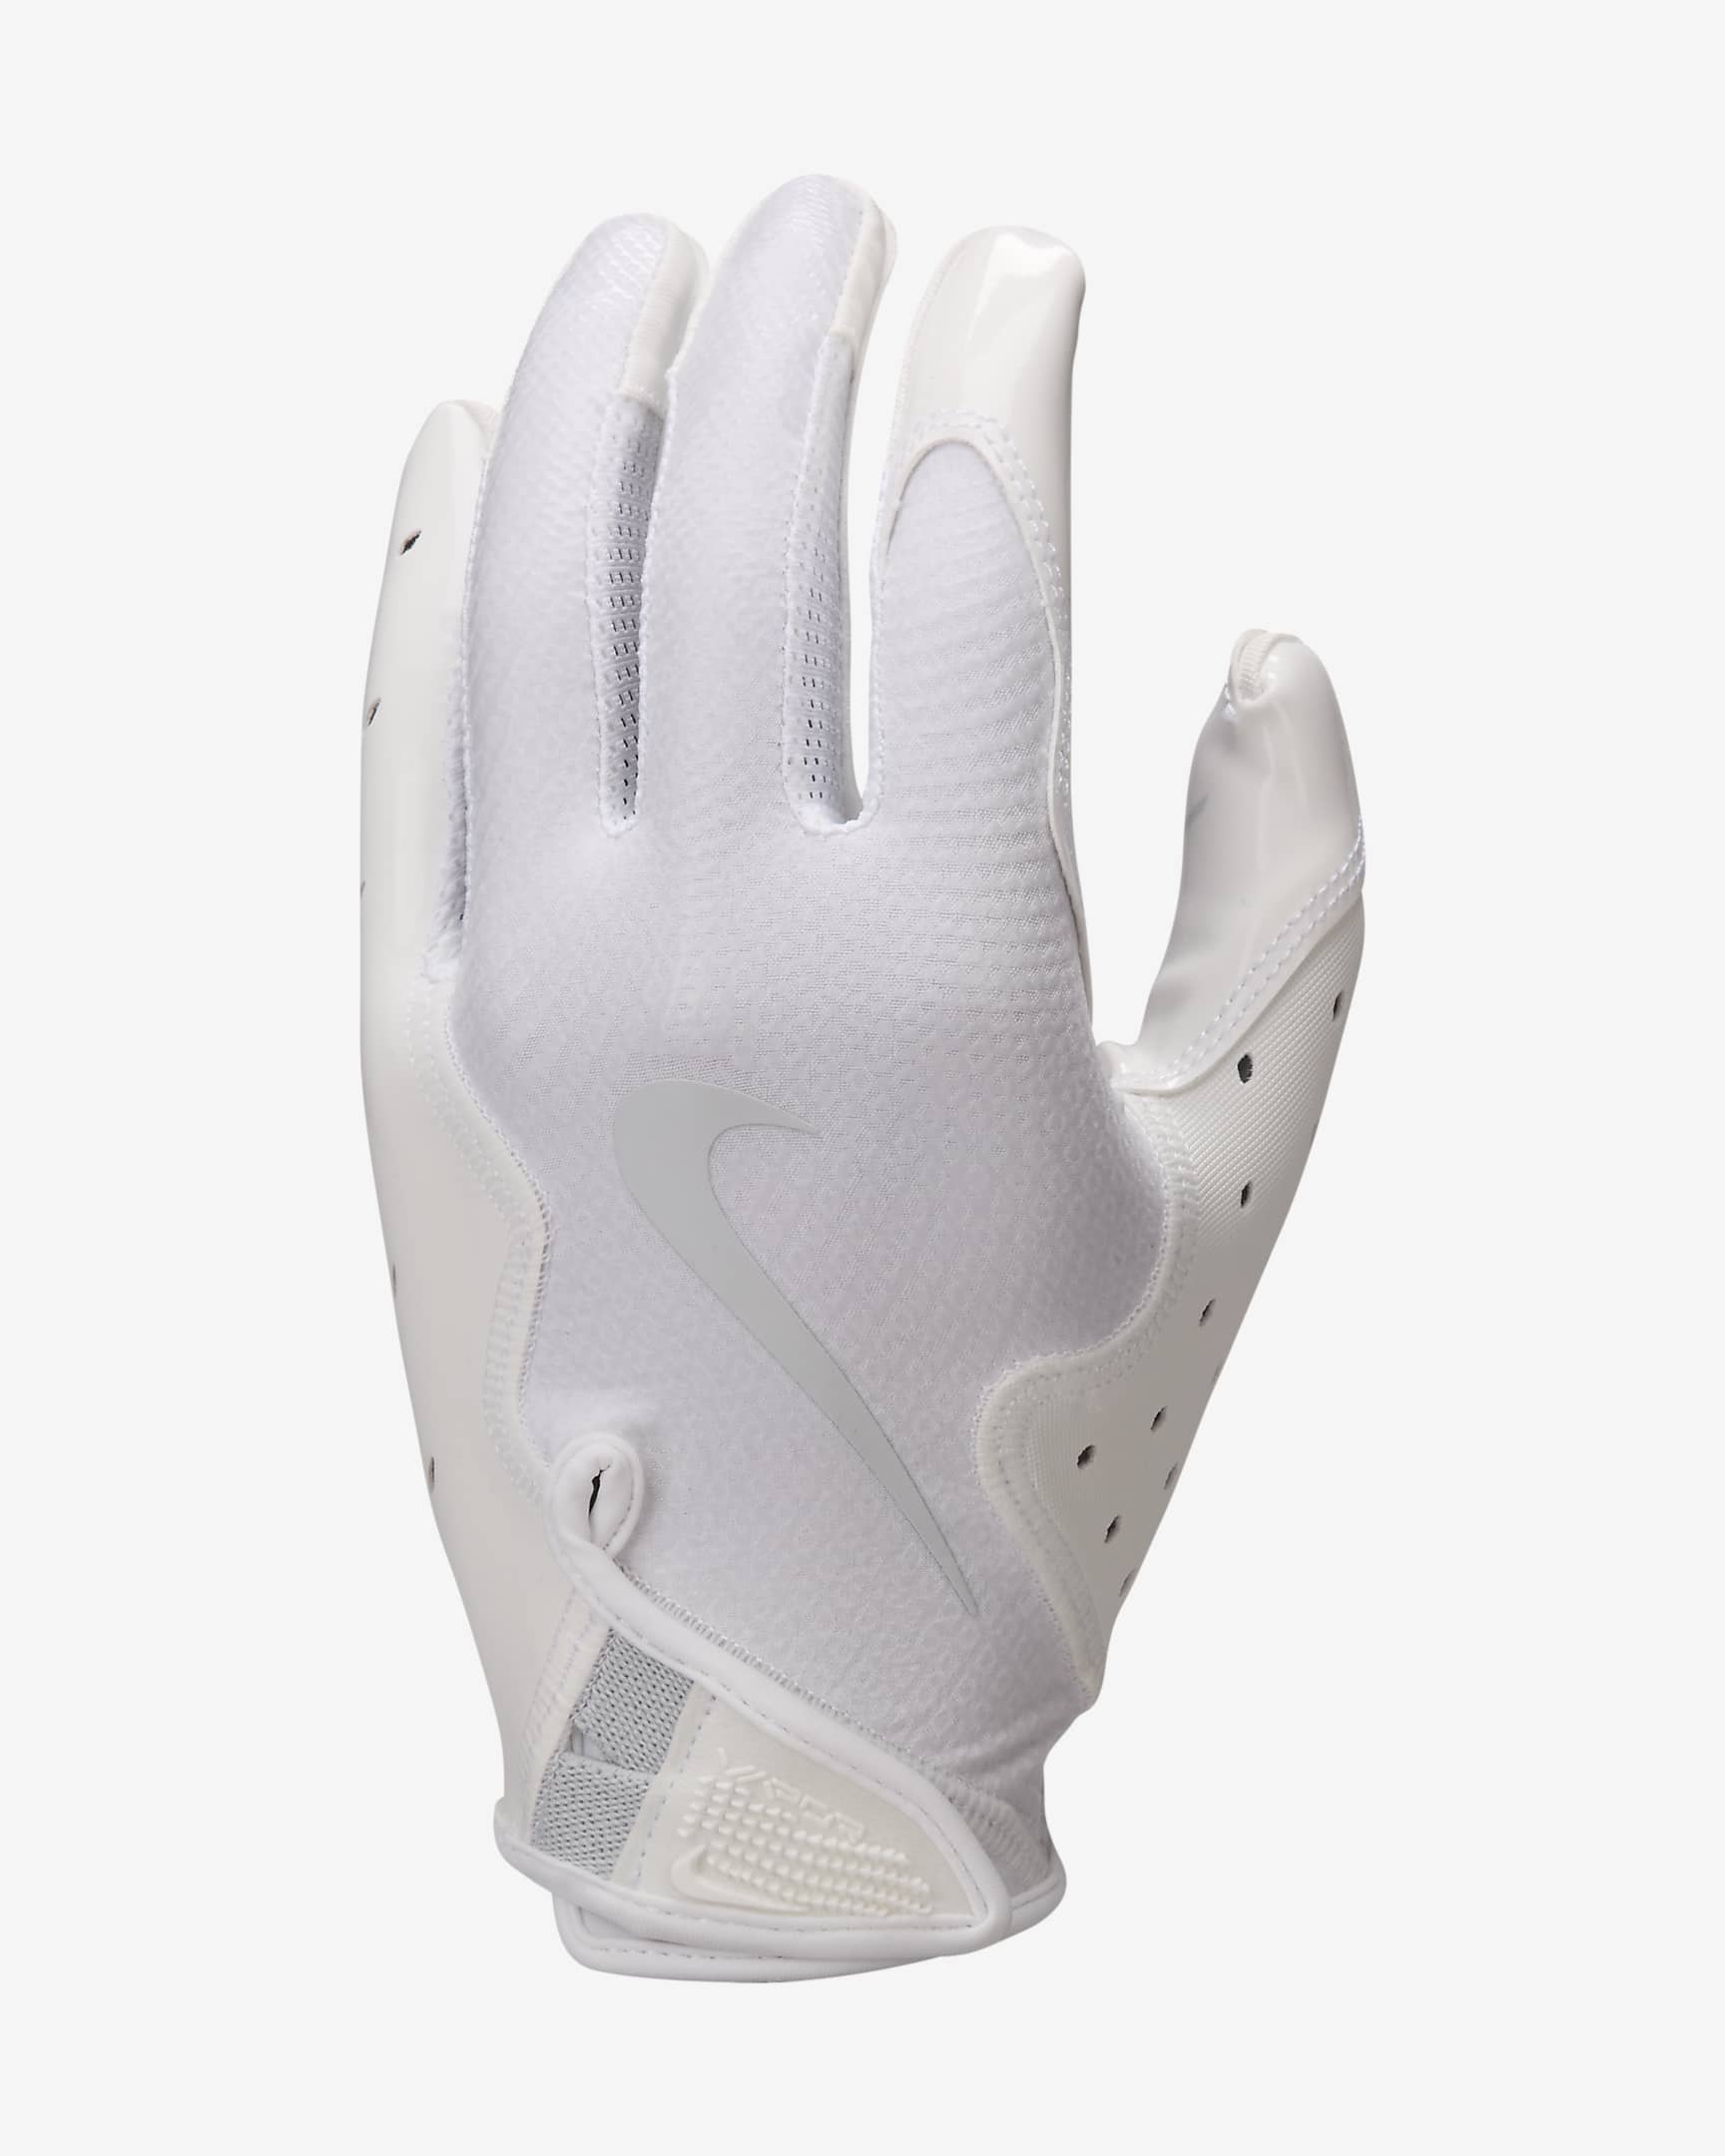 Nike Vapor Jet 8.0 Football Gloves (1 Pair) - White